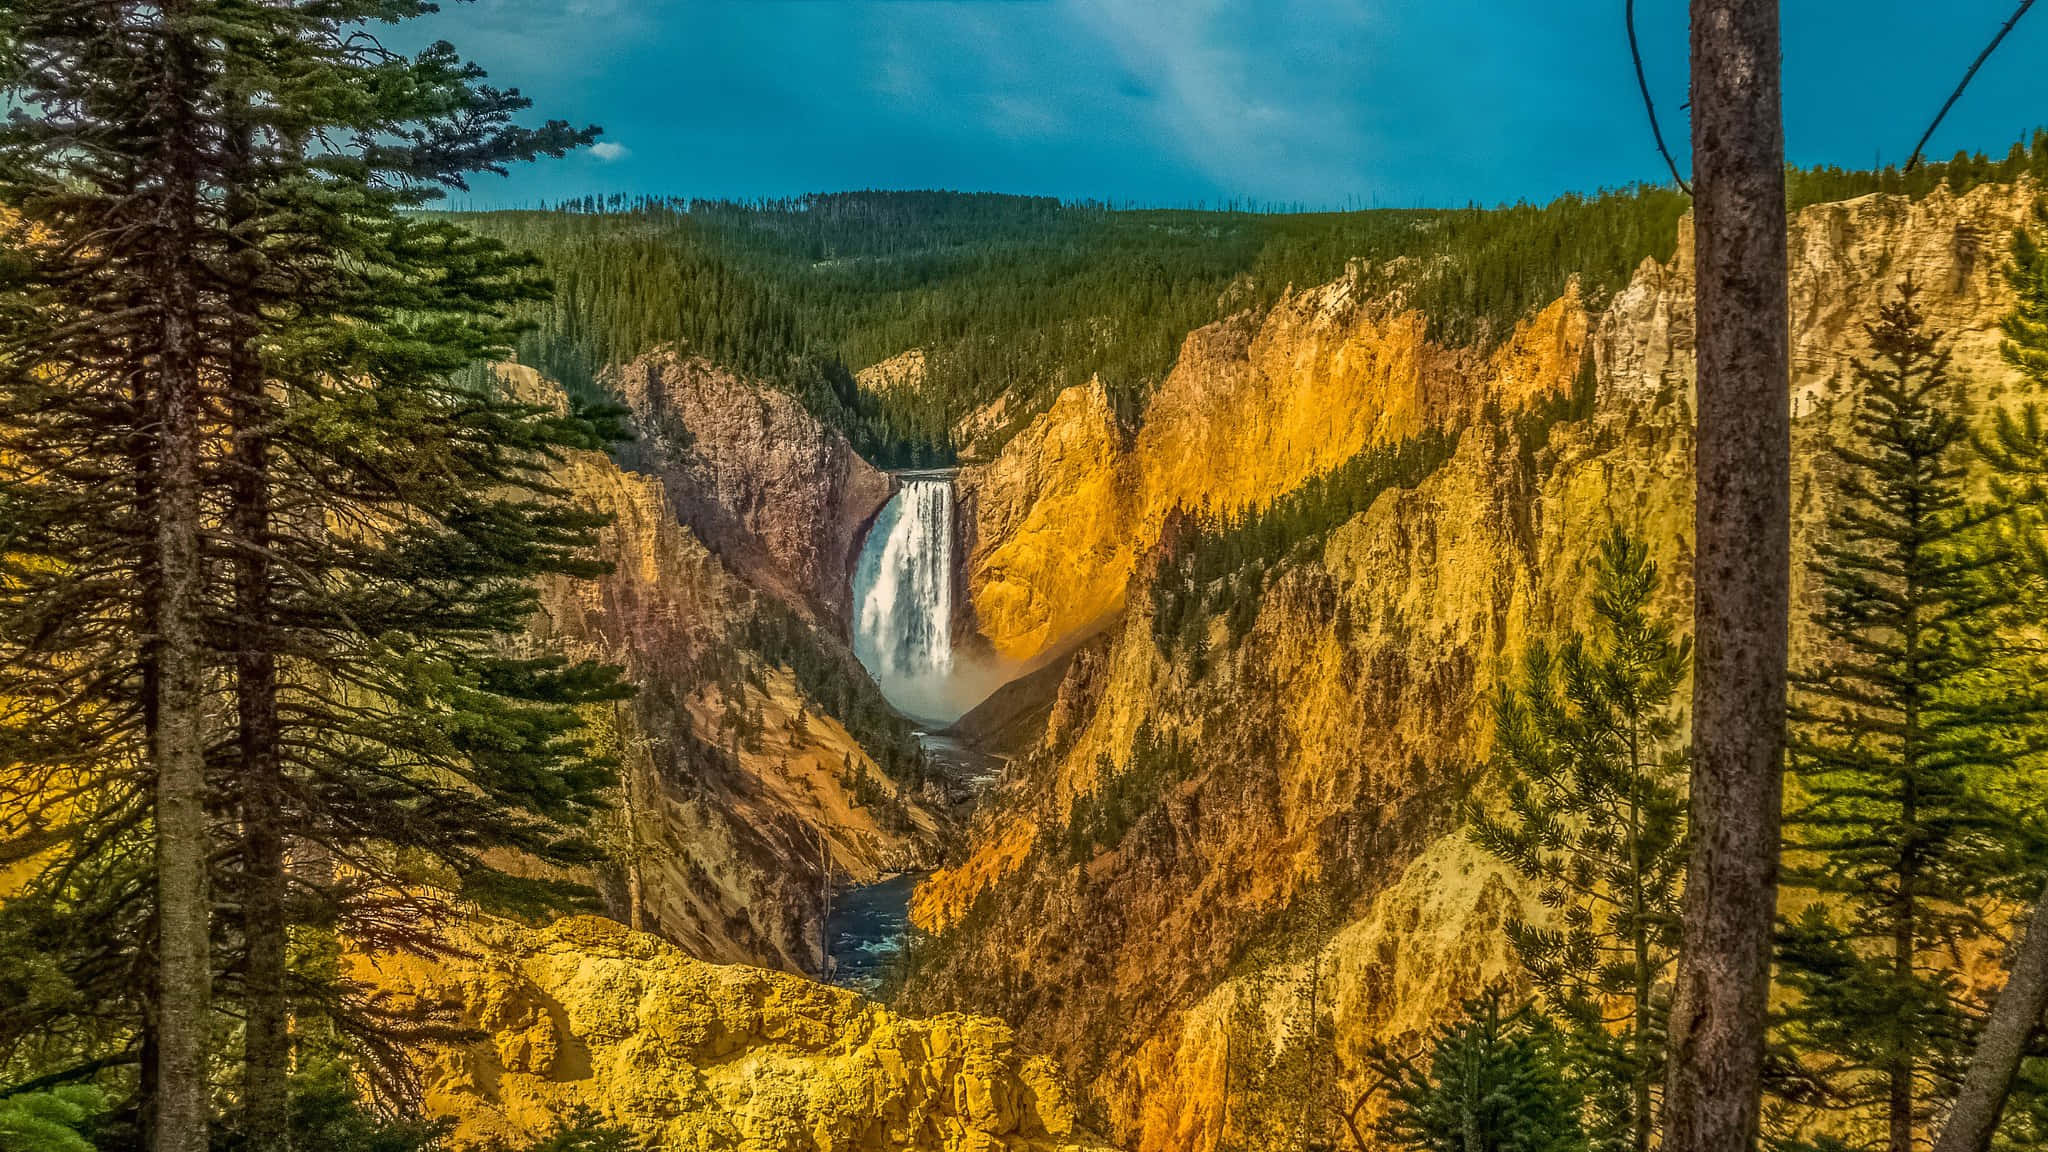 Fondode Pantalla De Yellowstone Con Fan Art De Las Cataratas Y Las Montañas.